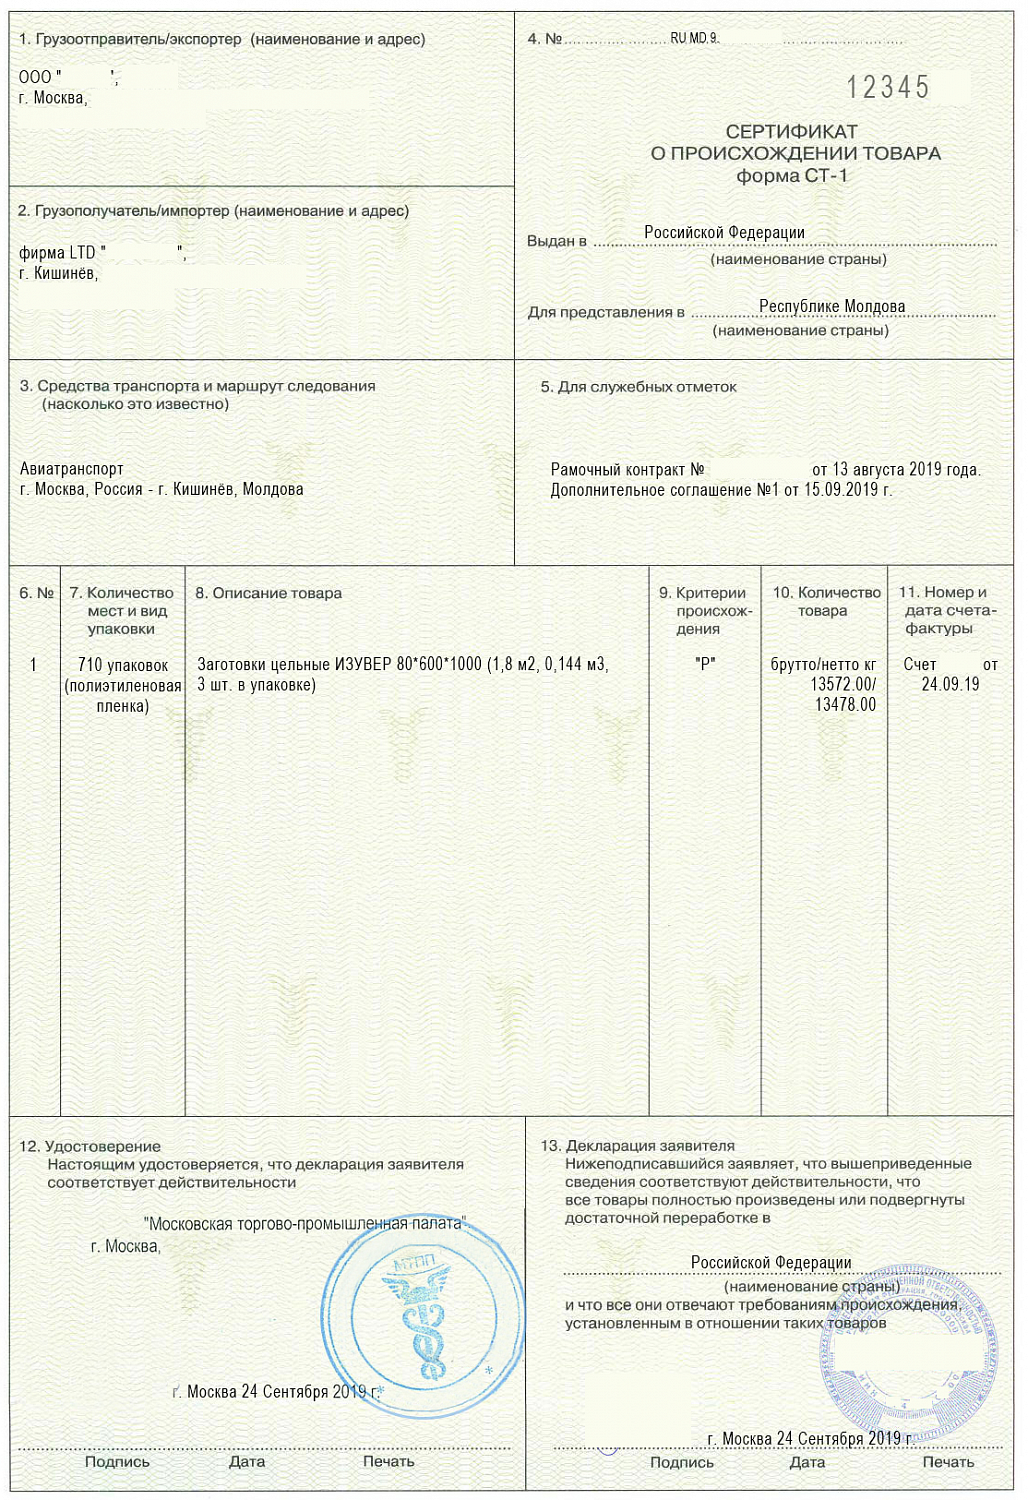 Сертификаты происхождения (форма СТ-1)